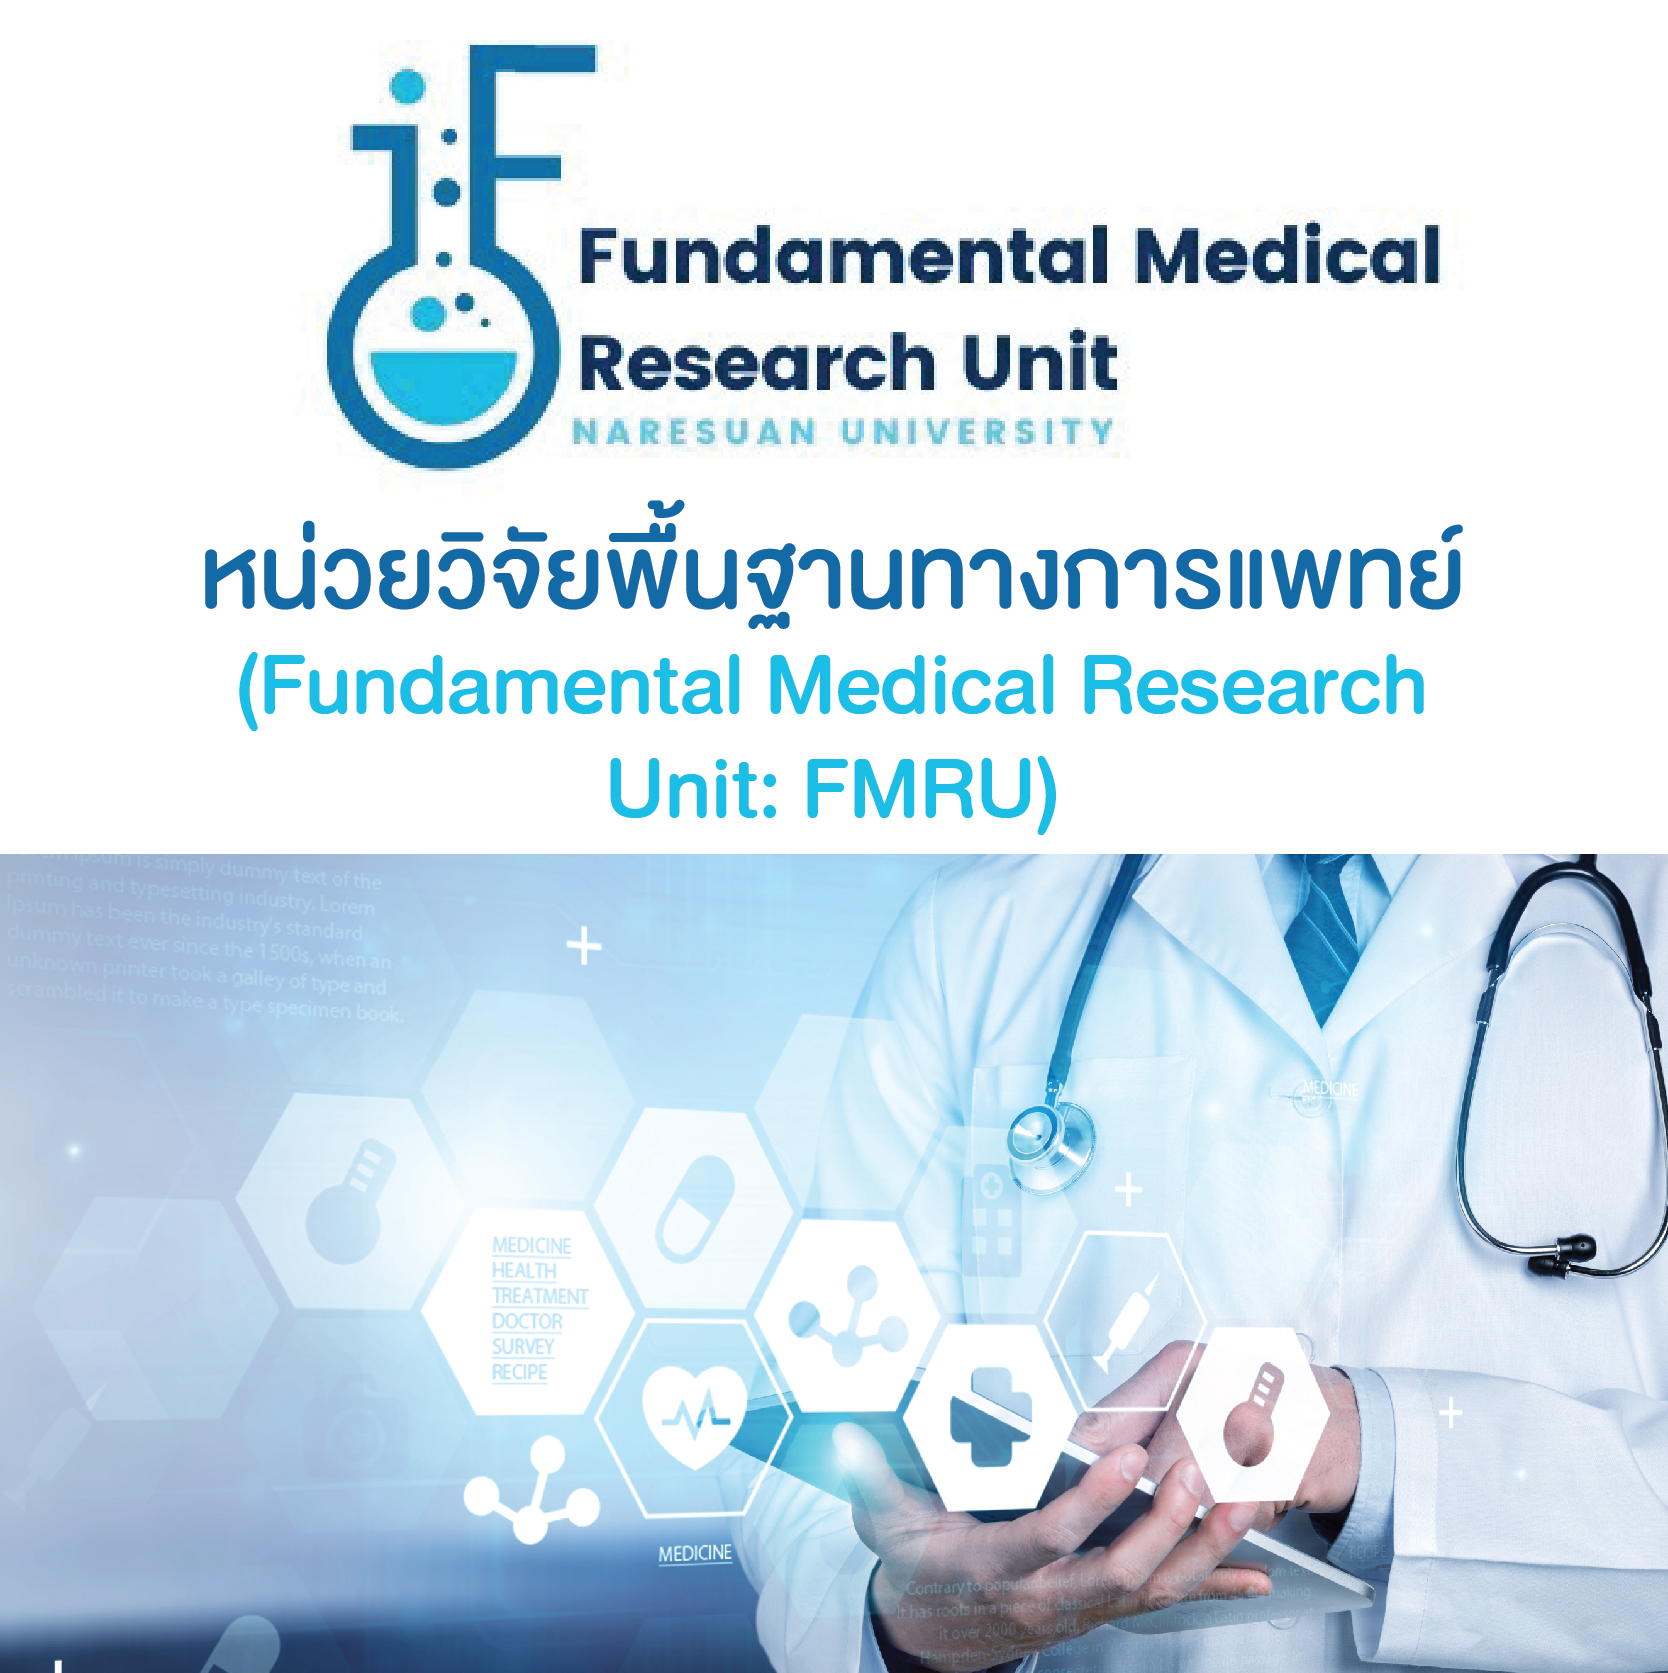 Fundamental Medical Research Unit: FMRU